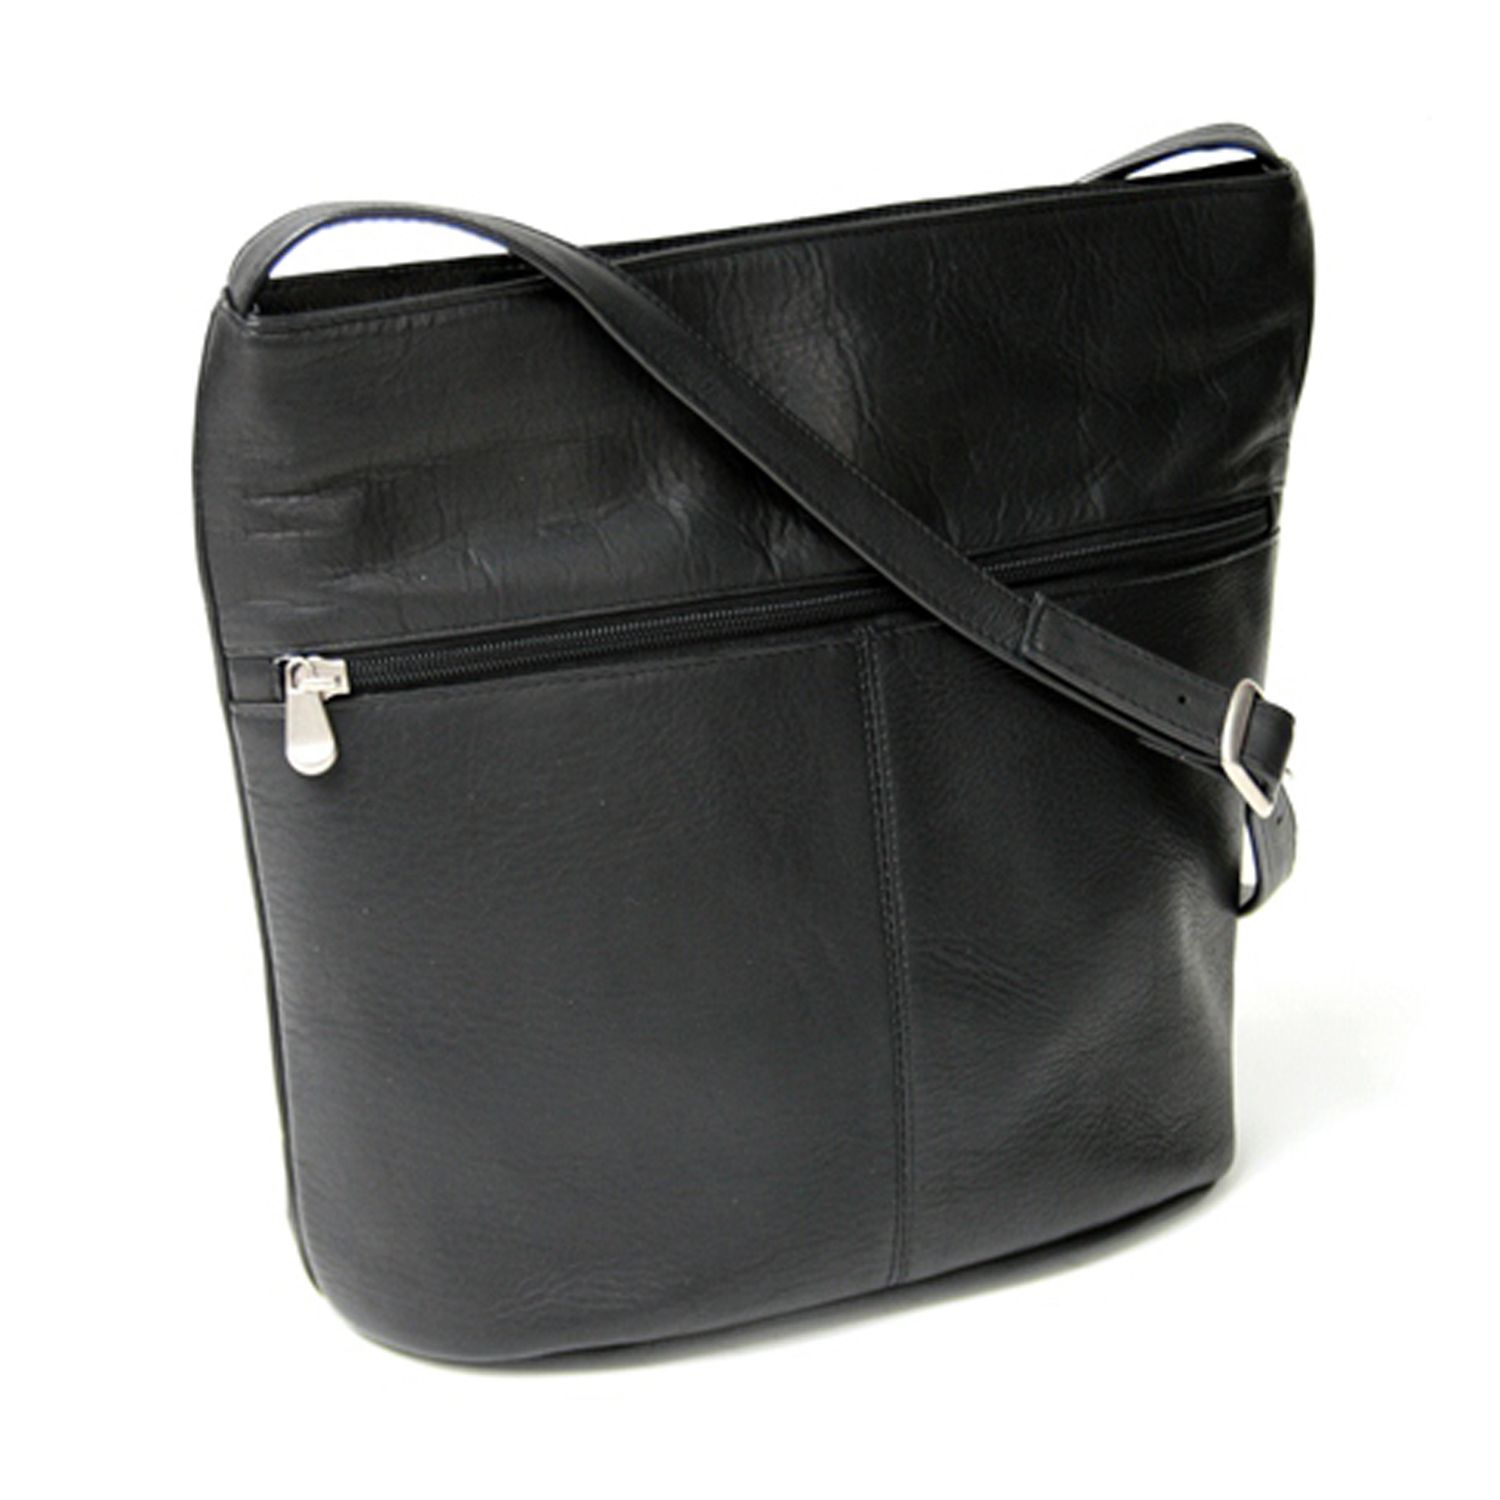 Черная кожаная сумка через плечо Royce Vaquetta Royce Leather